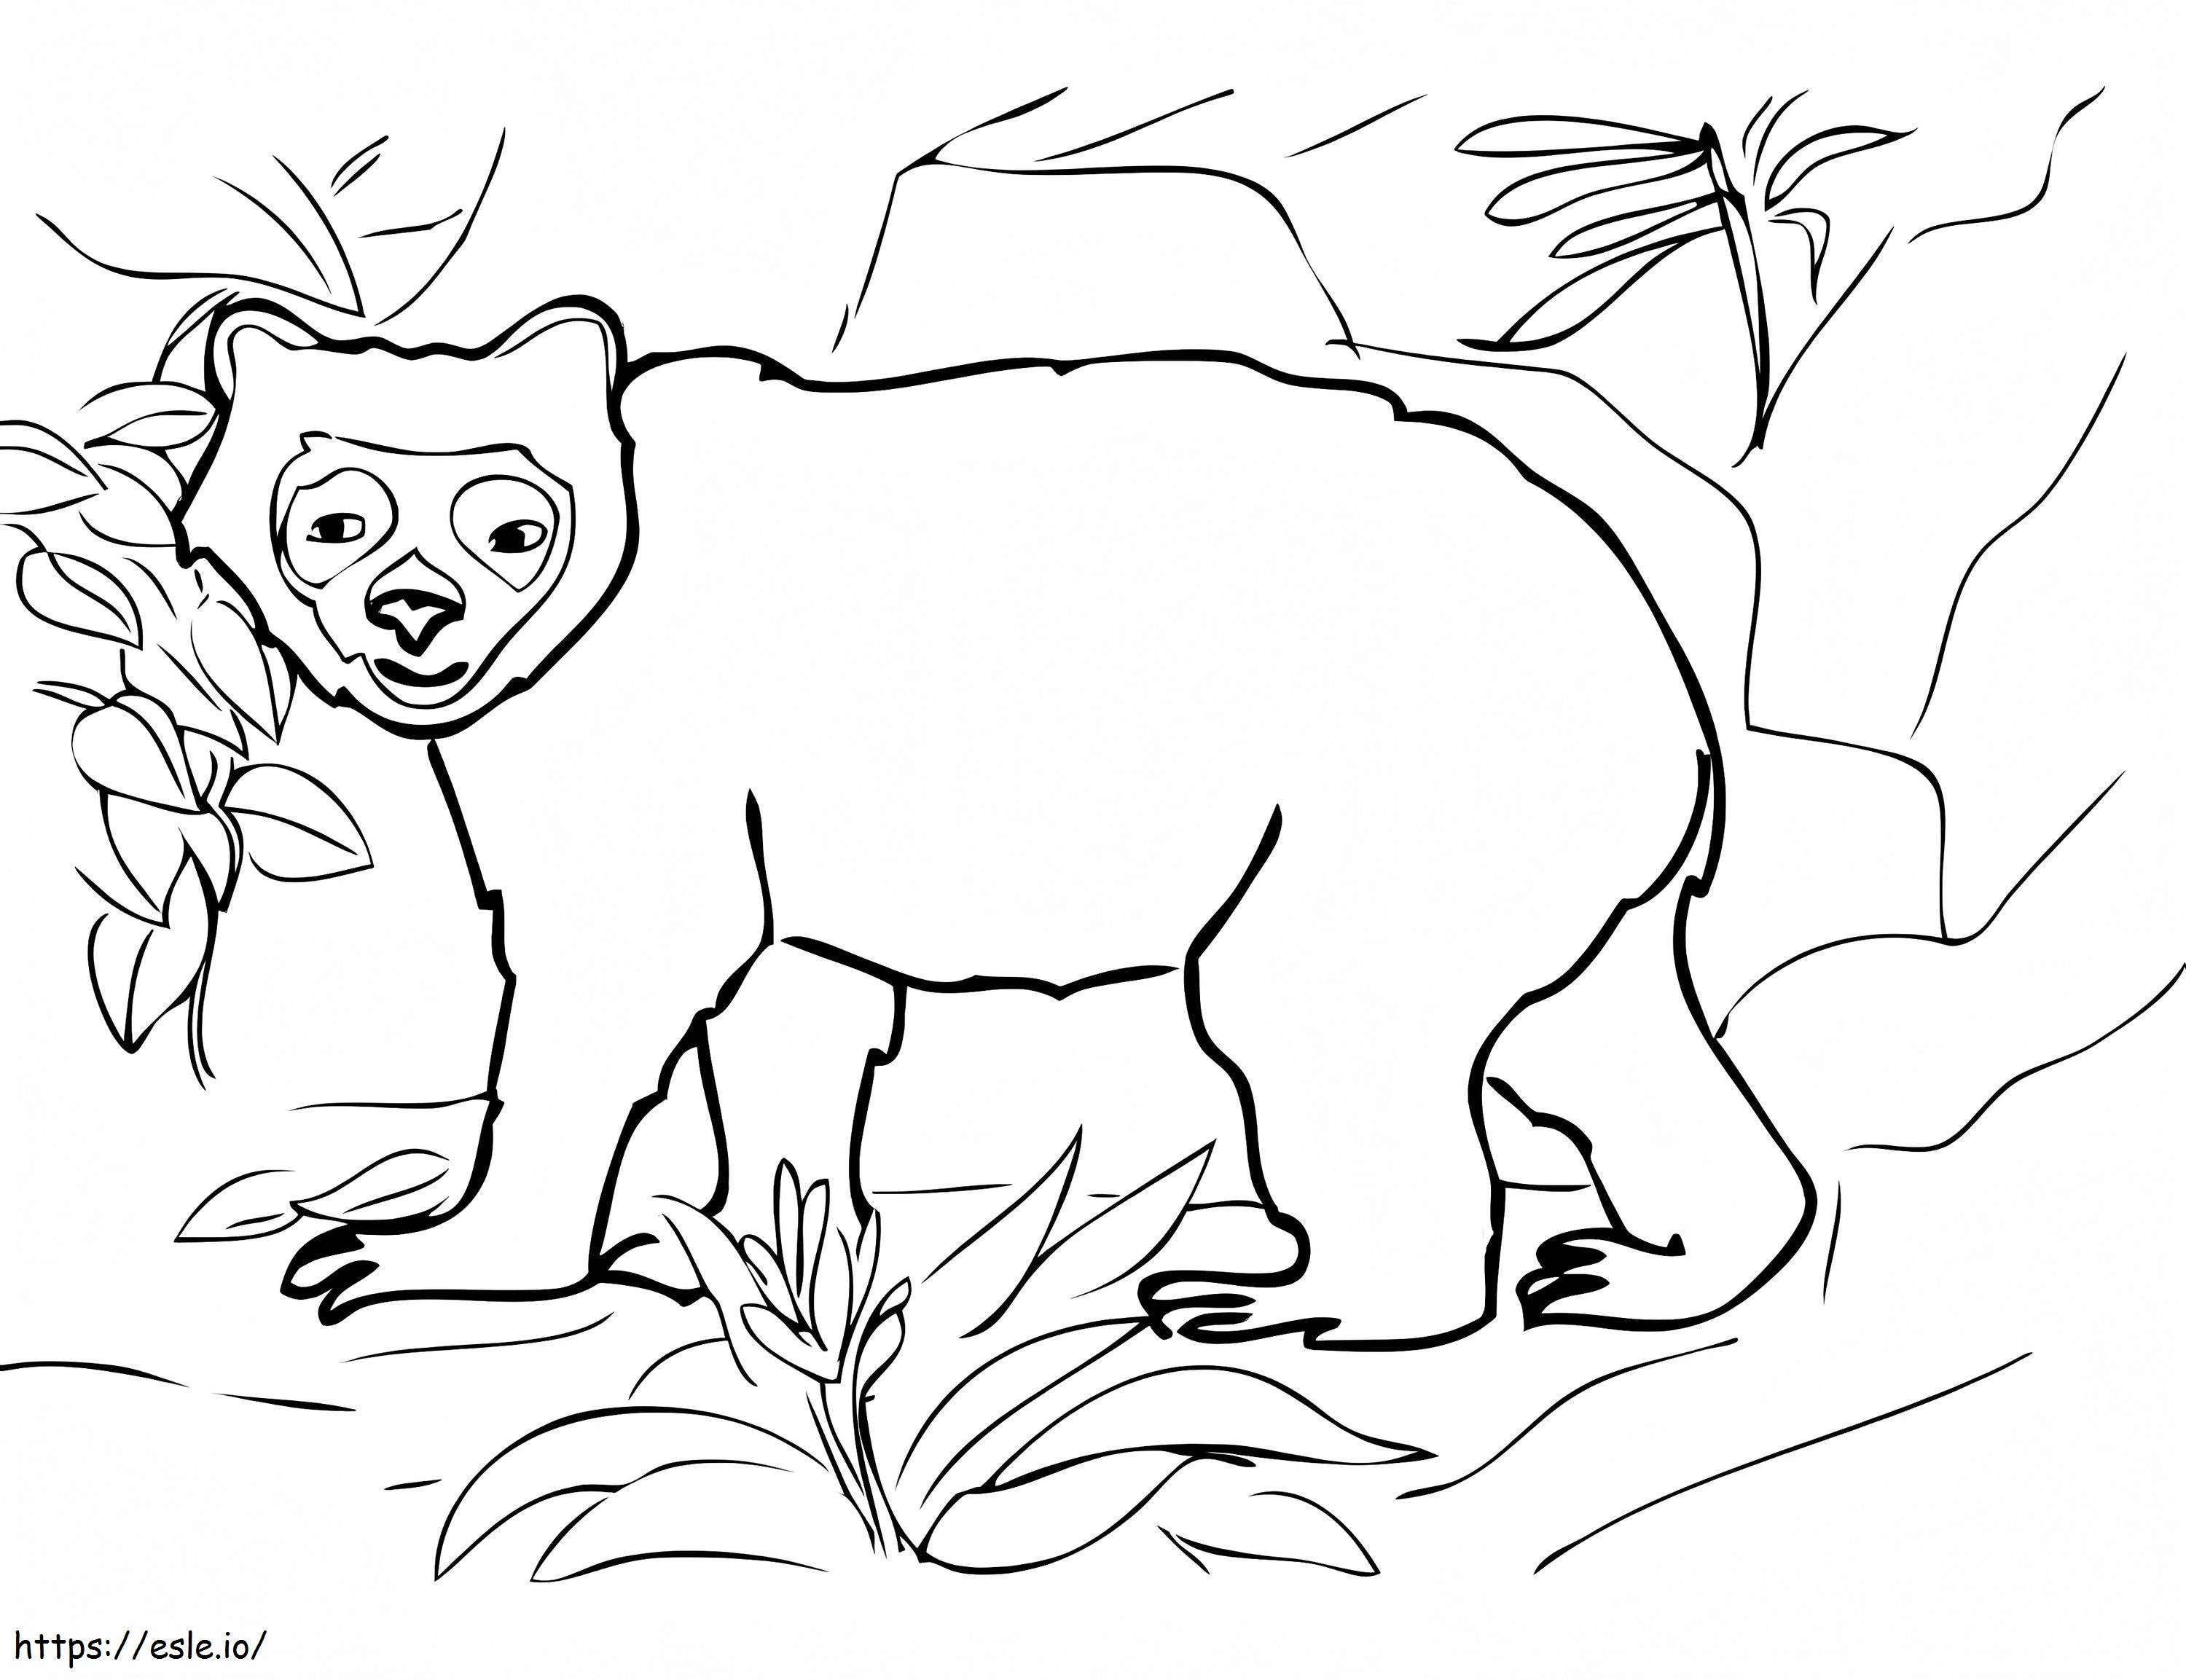 Cara engraçada de urso para colorir